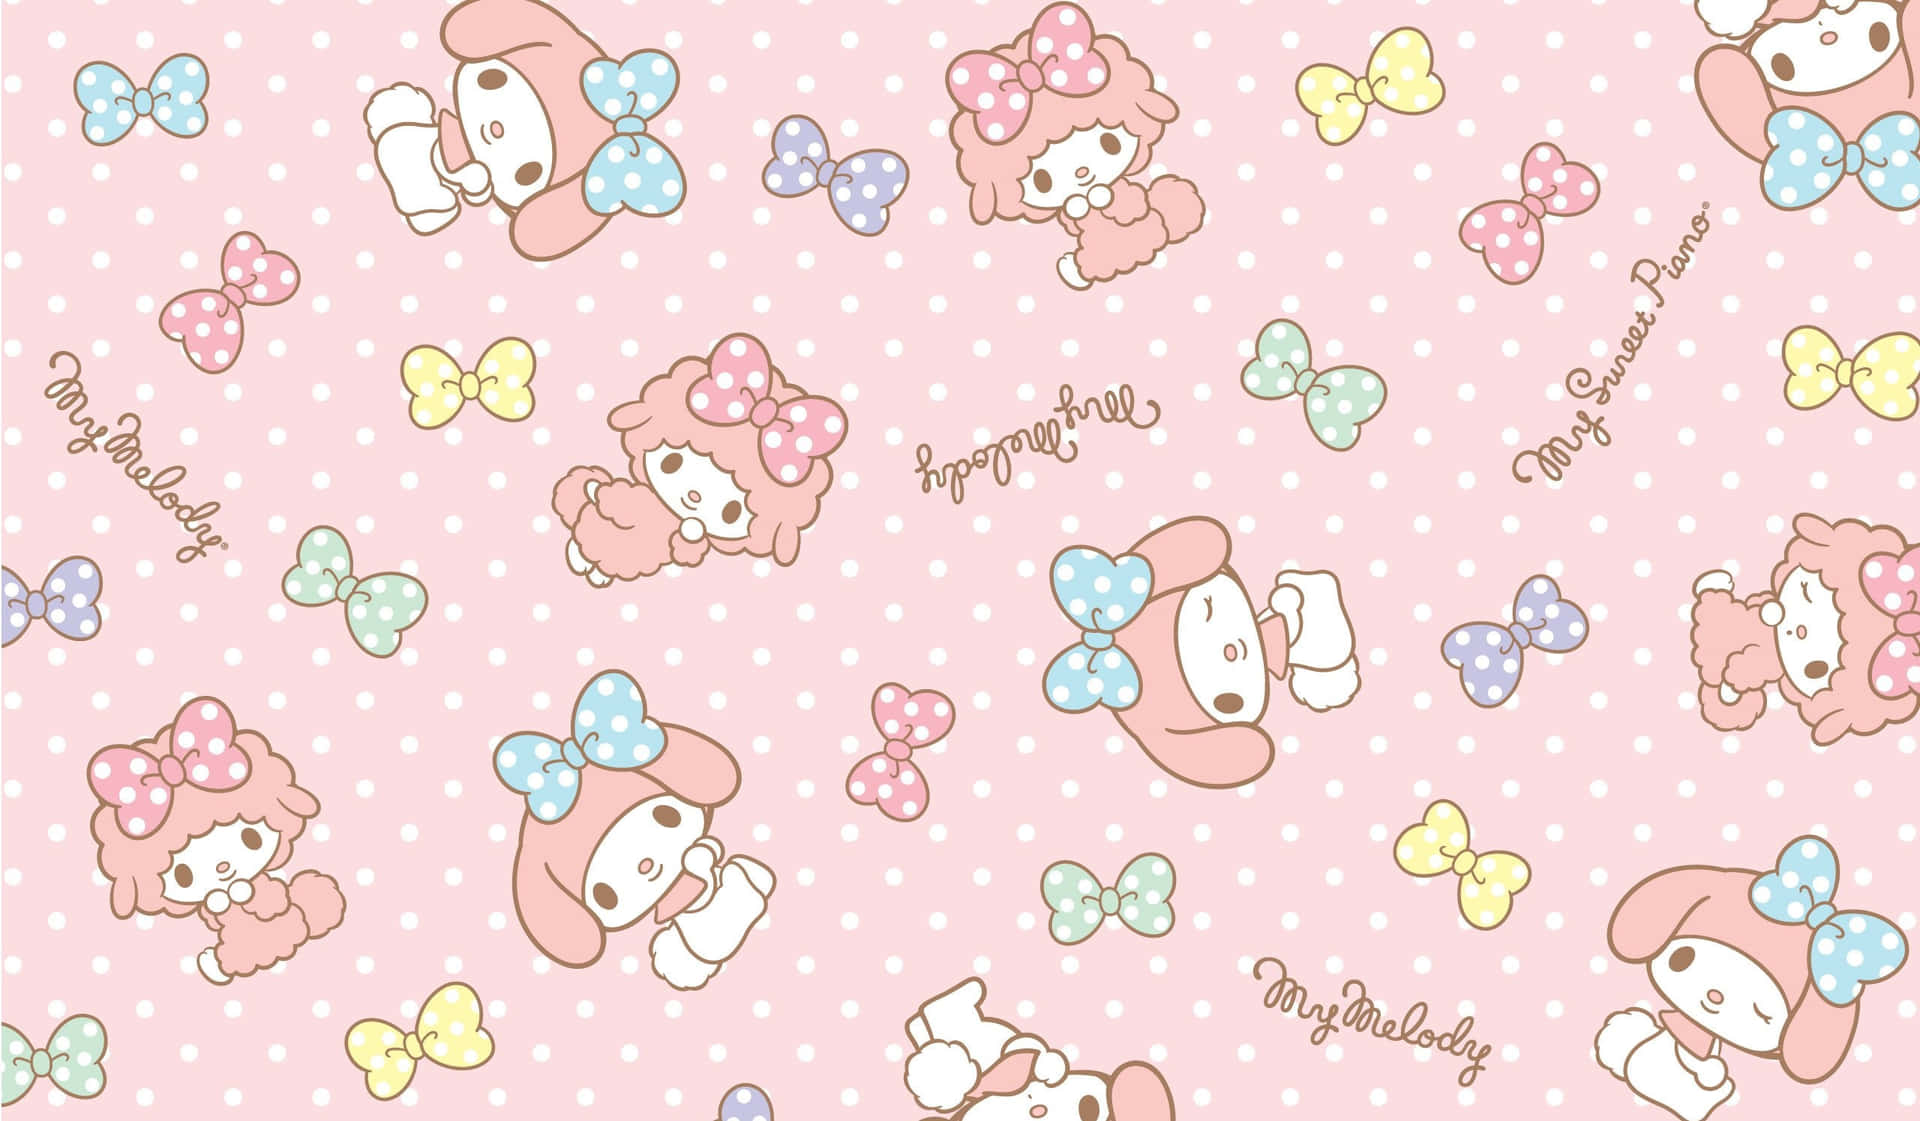 Sanrio Characters Polka Dot Pattern Wallpaper